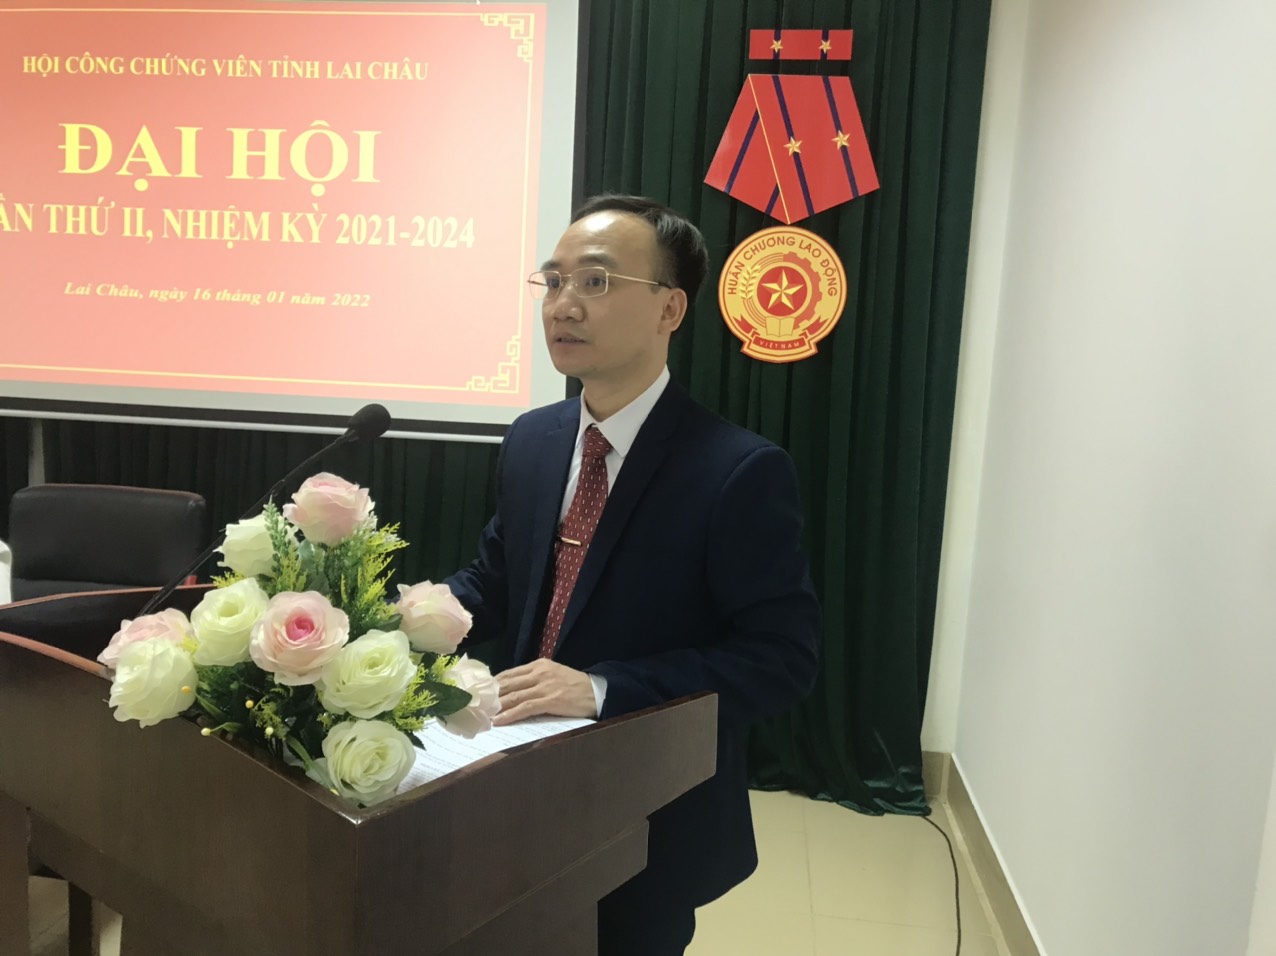 Đại hội lần thứ II Hội Công chứng viên tỉnh Lai Châu